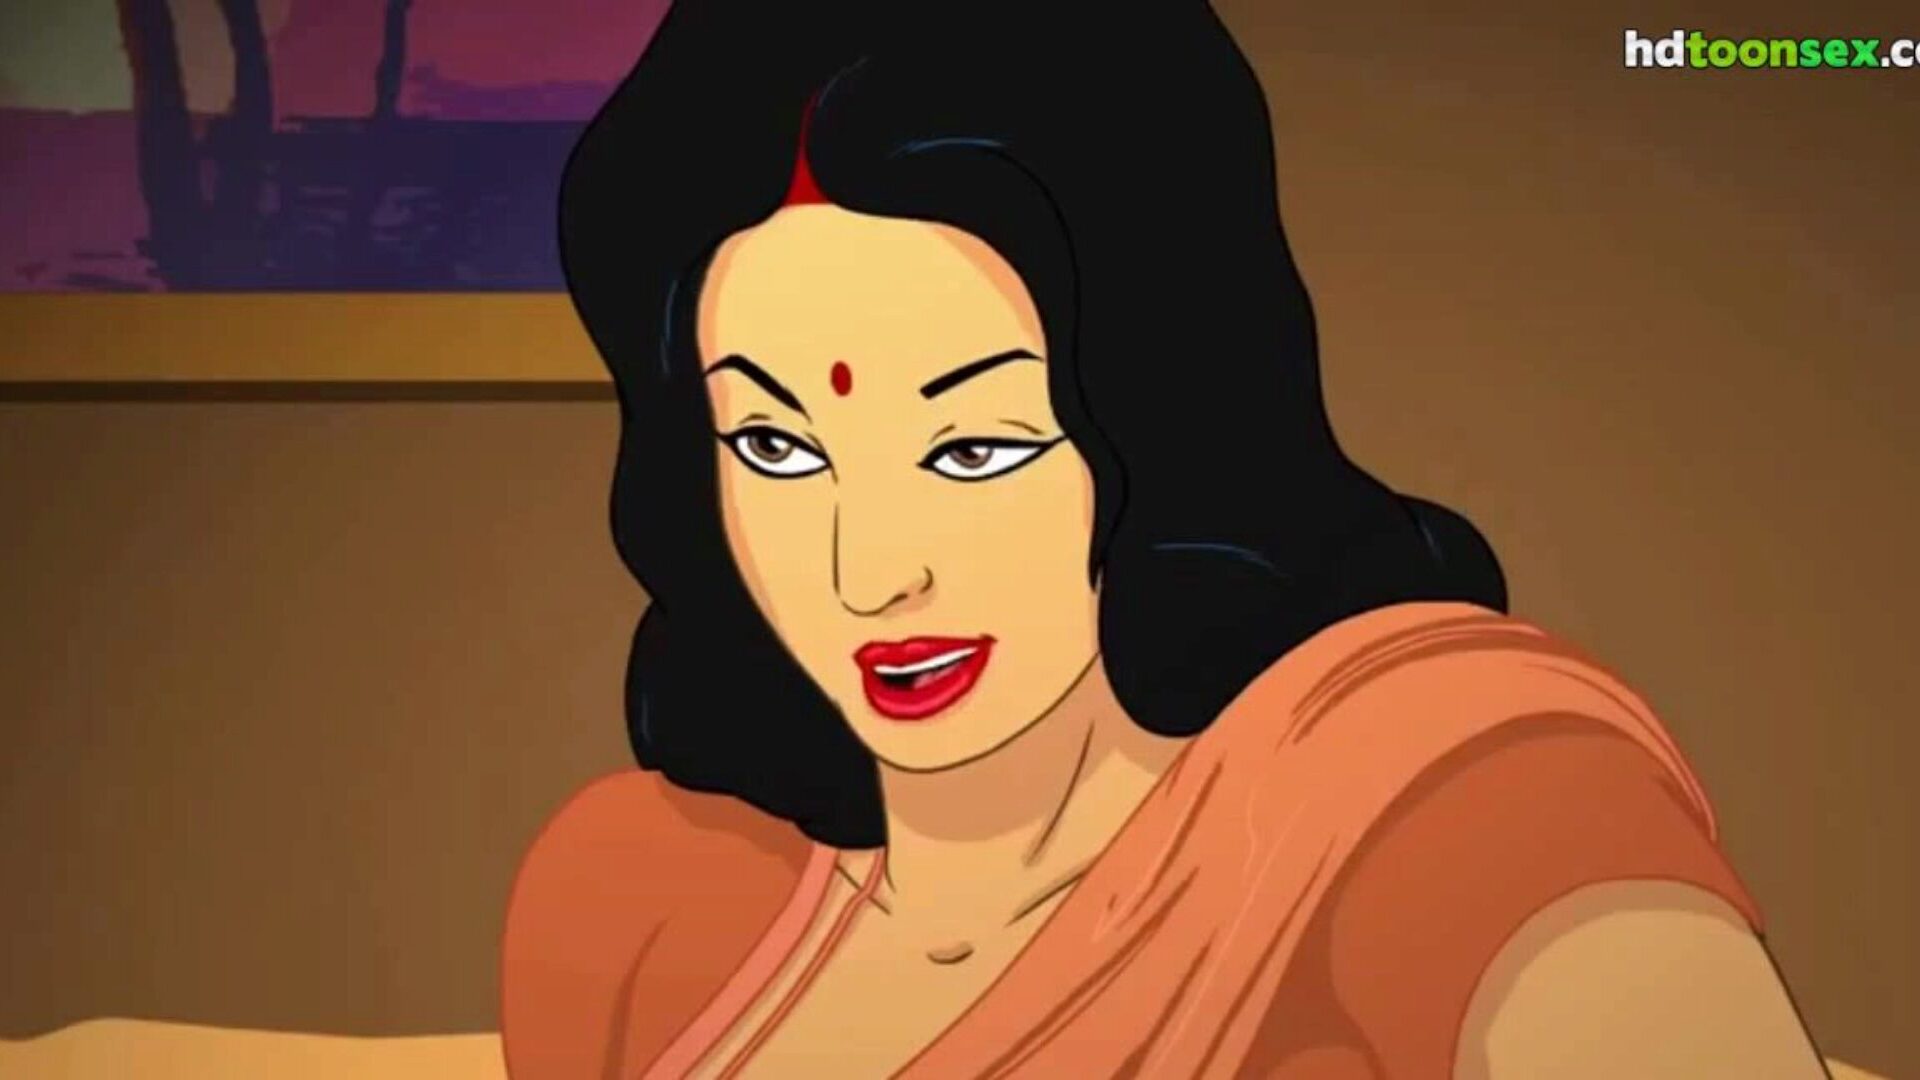 marathi intialainen seksikäs äiti toon -animaatio